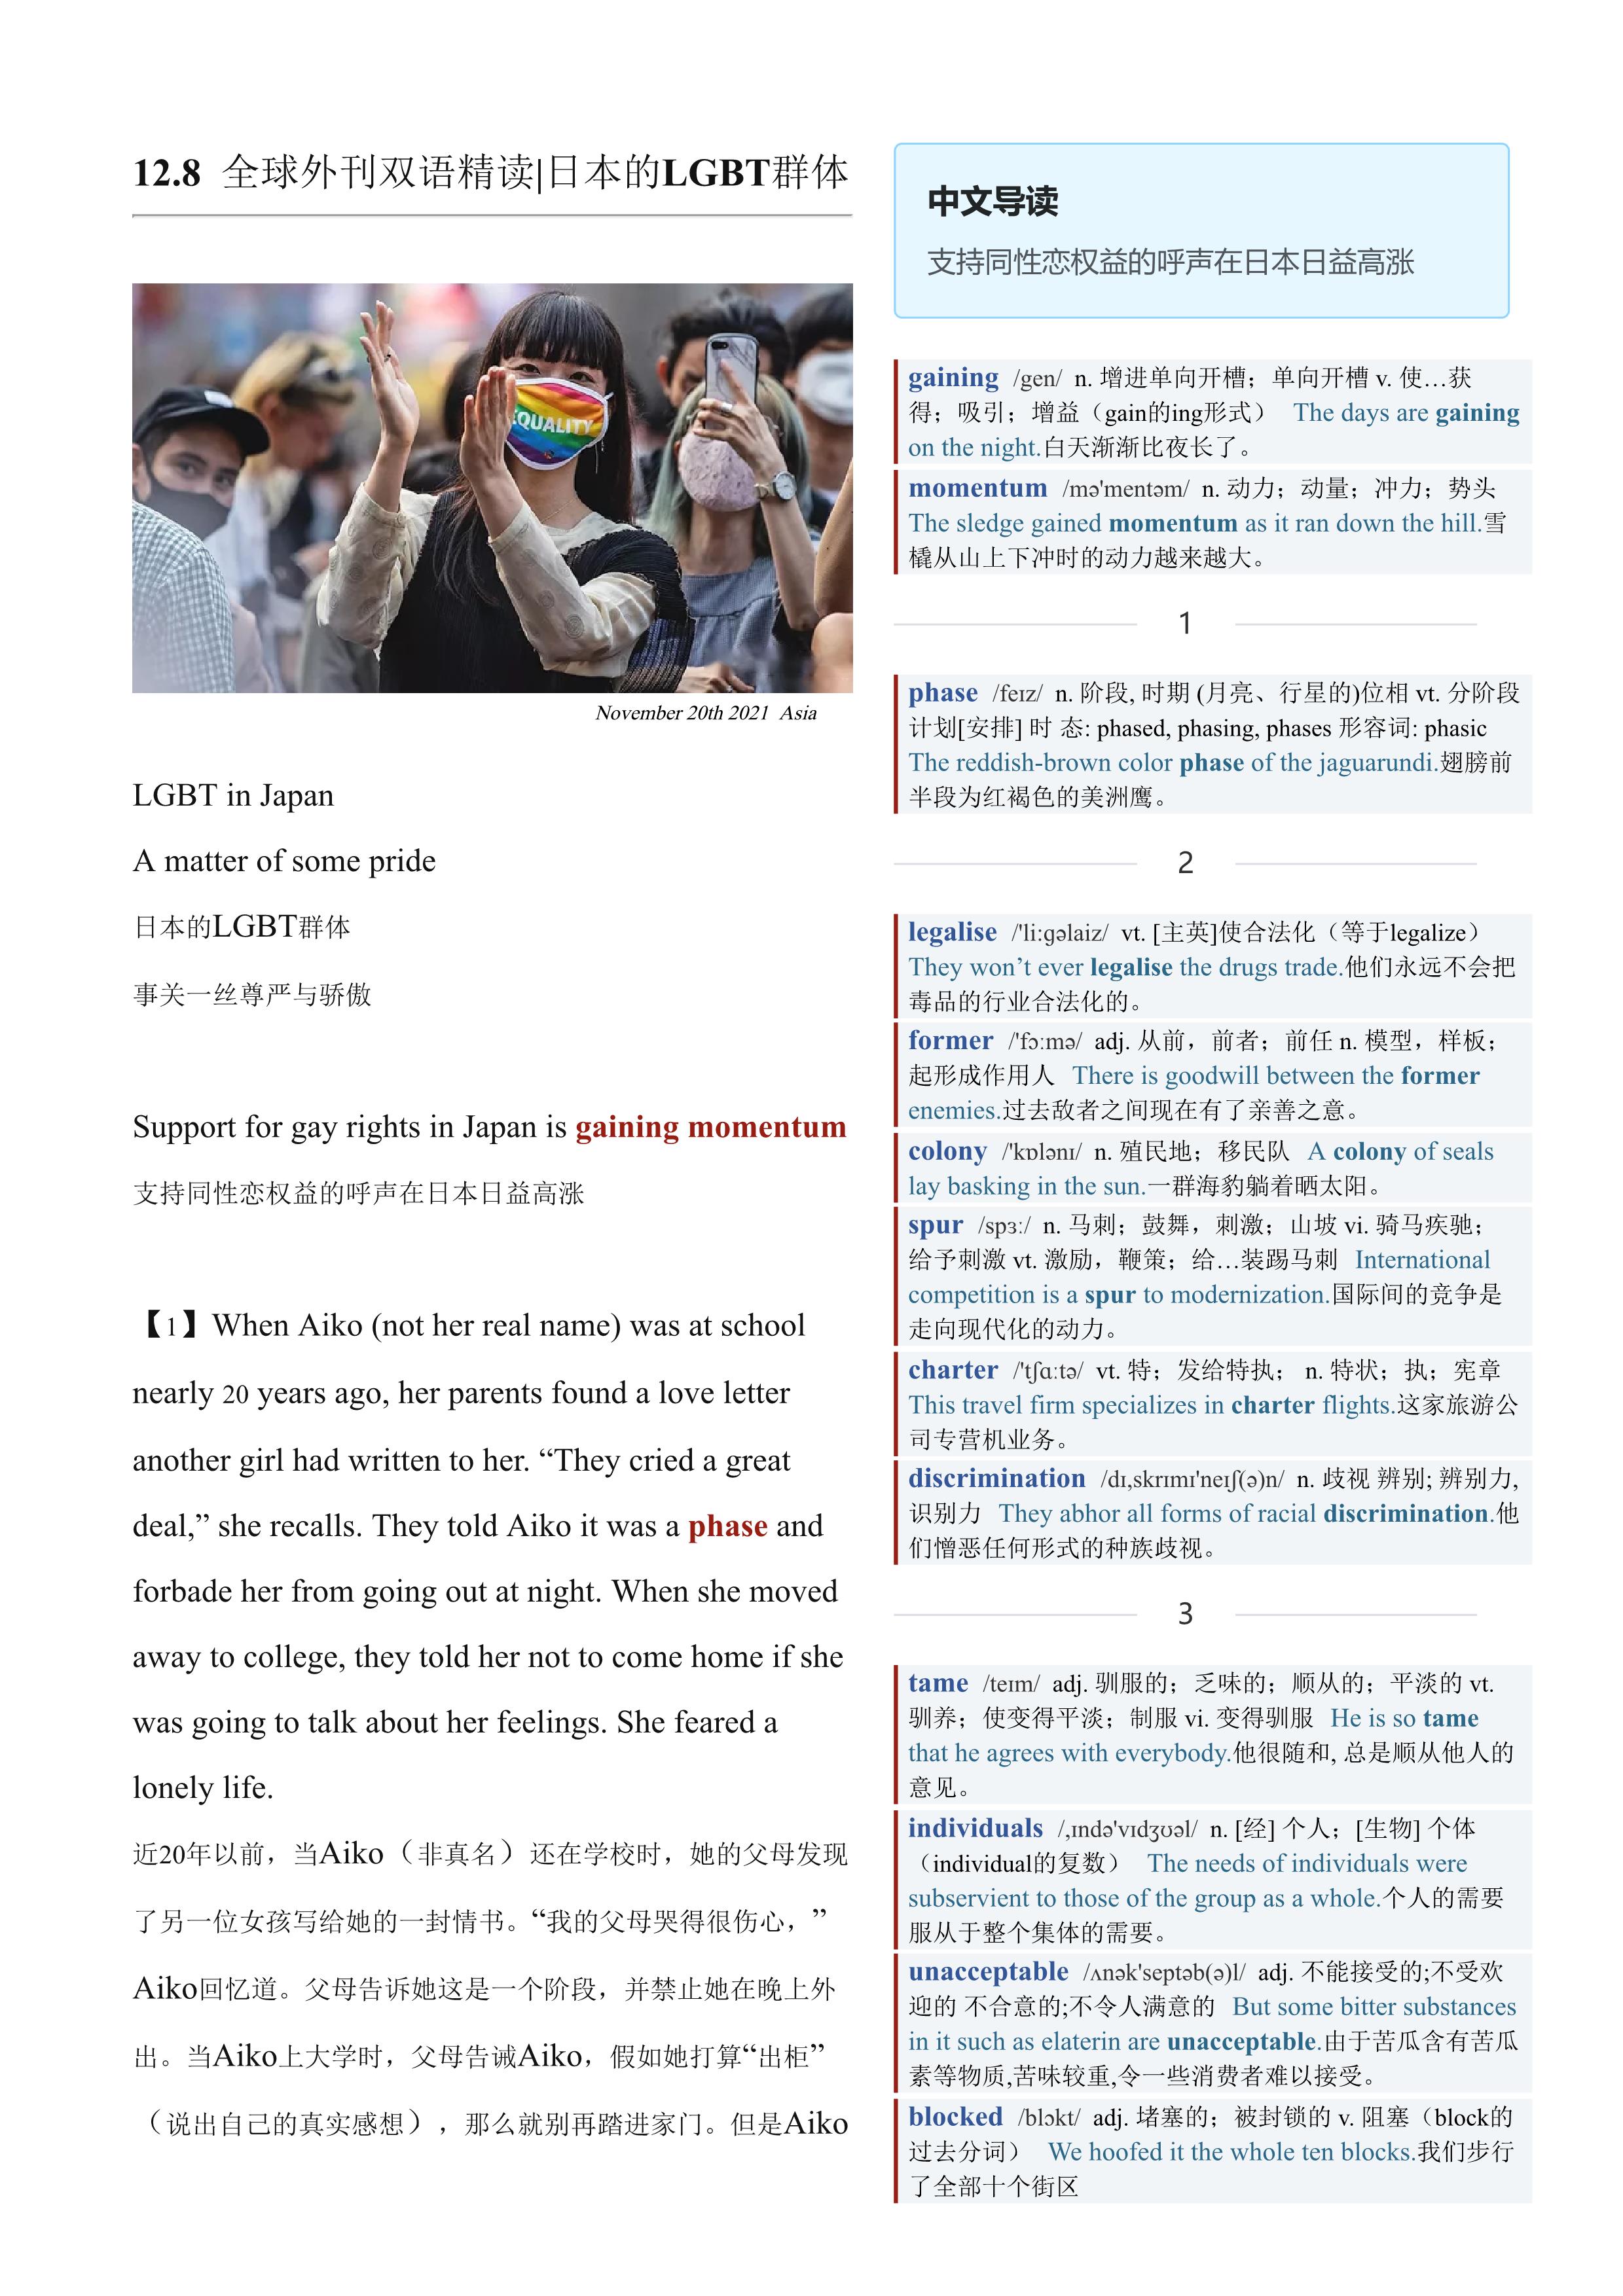 2021.12.08 经济学人双语精读丨日本的LGBT群体 (.PDF/DOC/MP3)